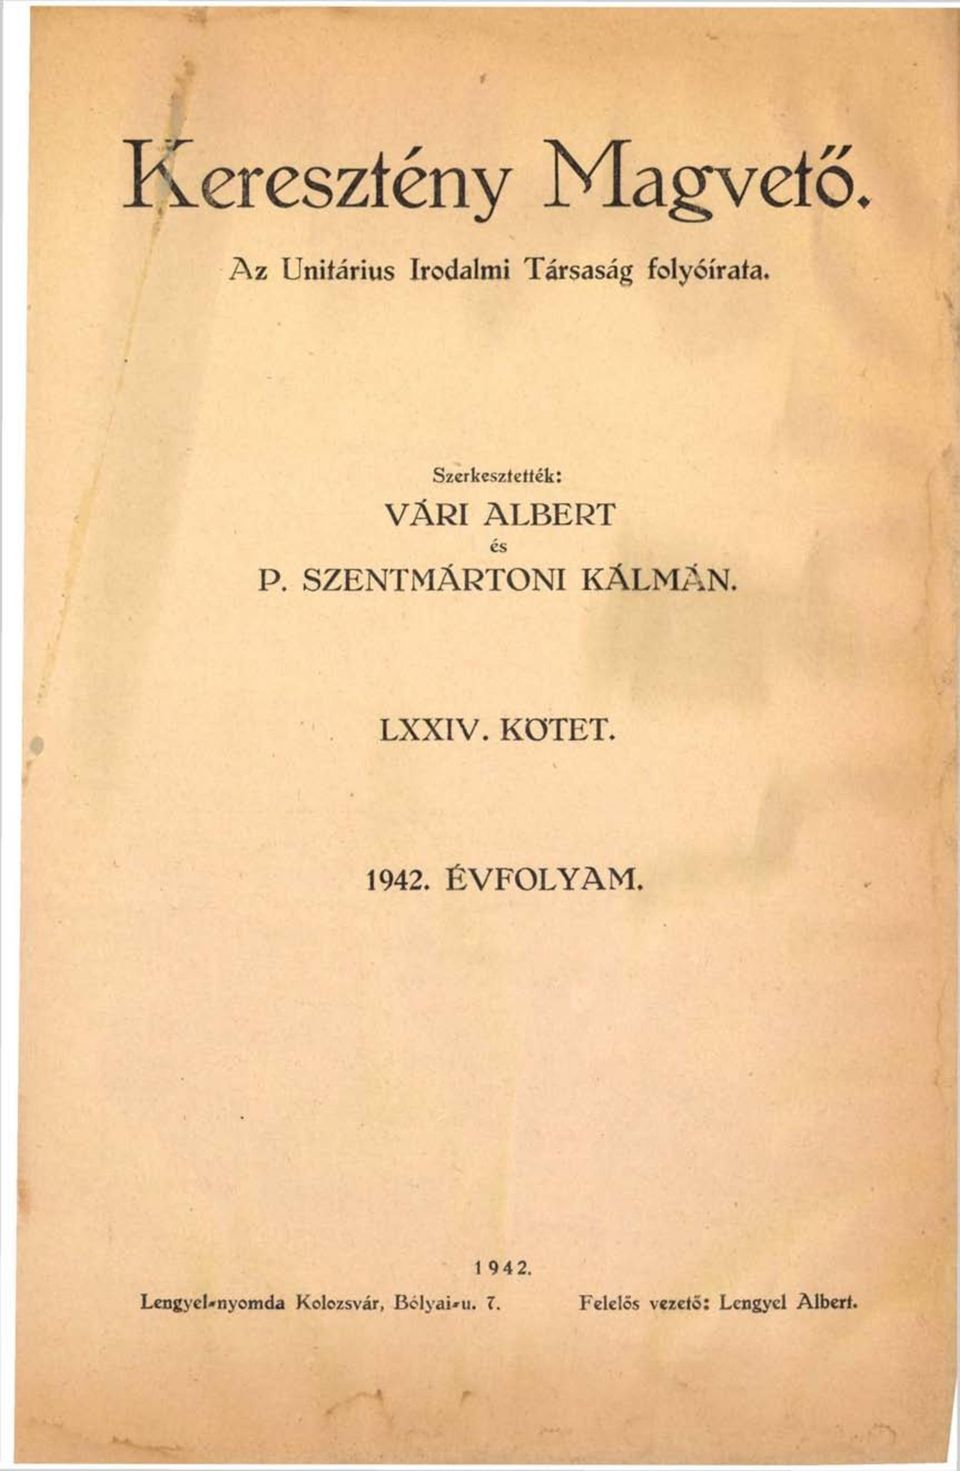 Szerkesztettek: VÁRI ALBERT és P. SZENTMÁRTONI KÁLMÁN.